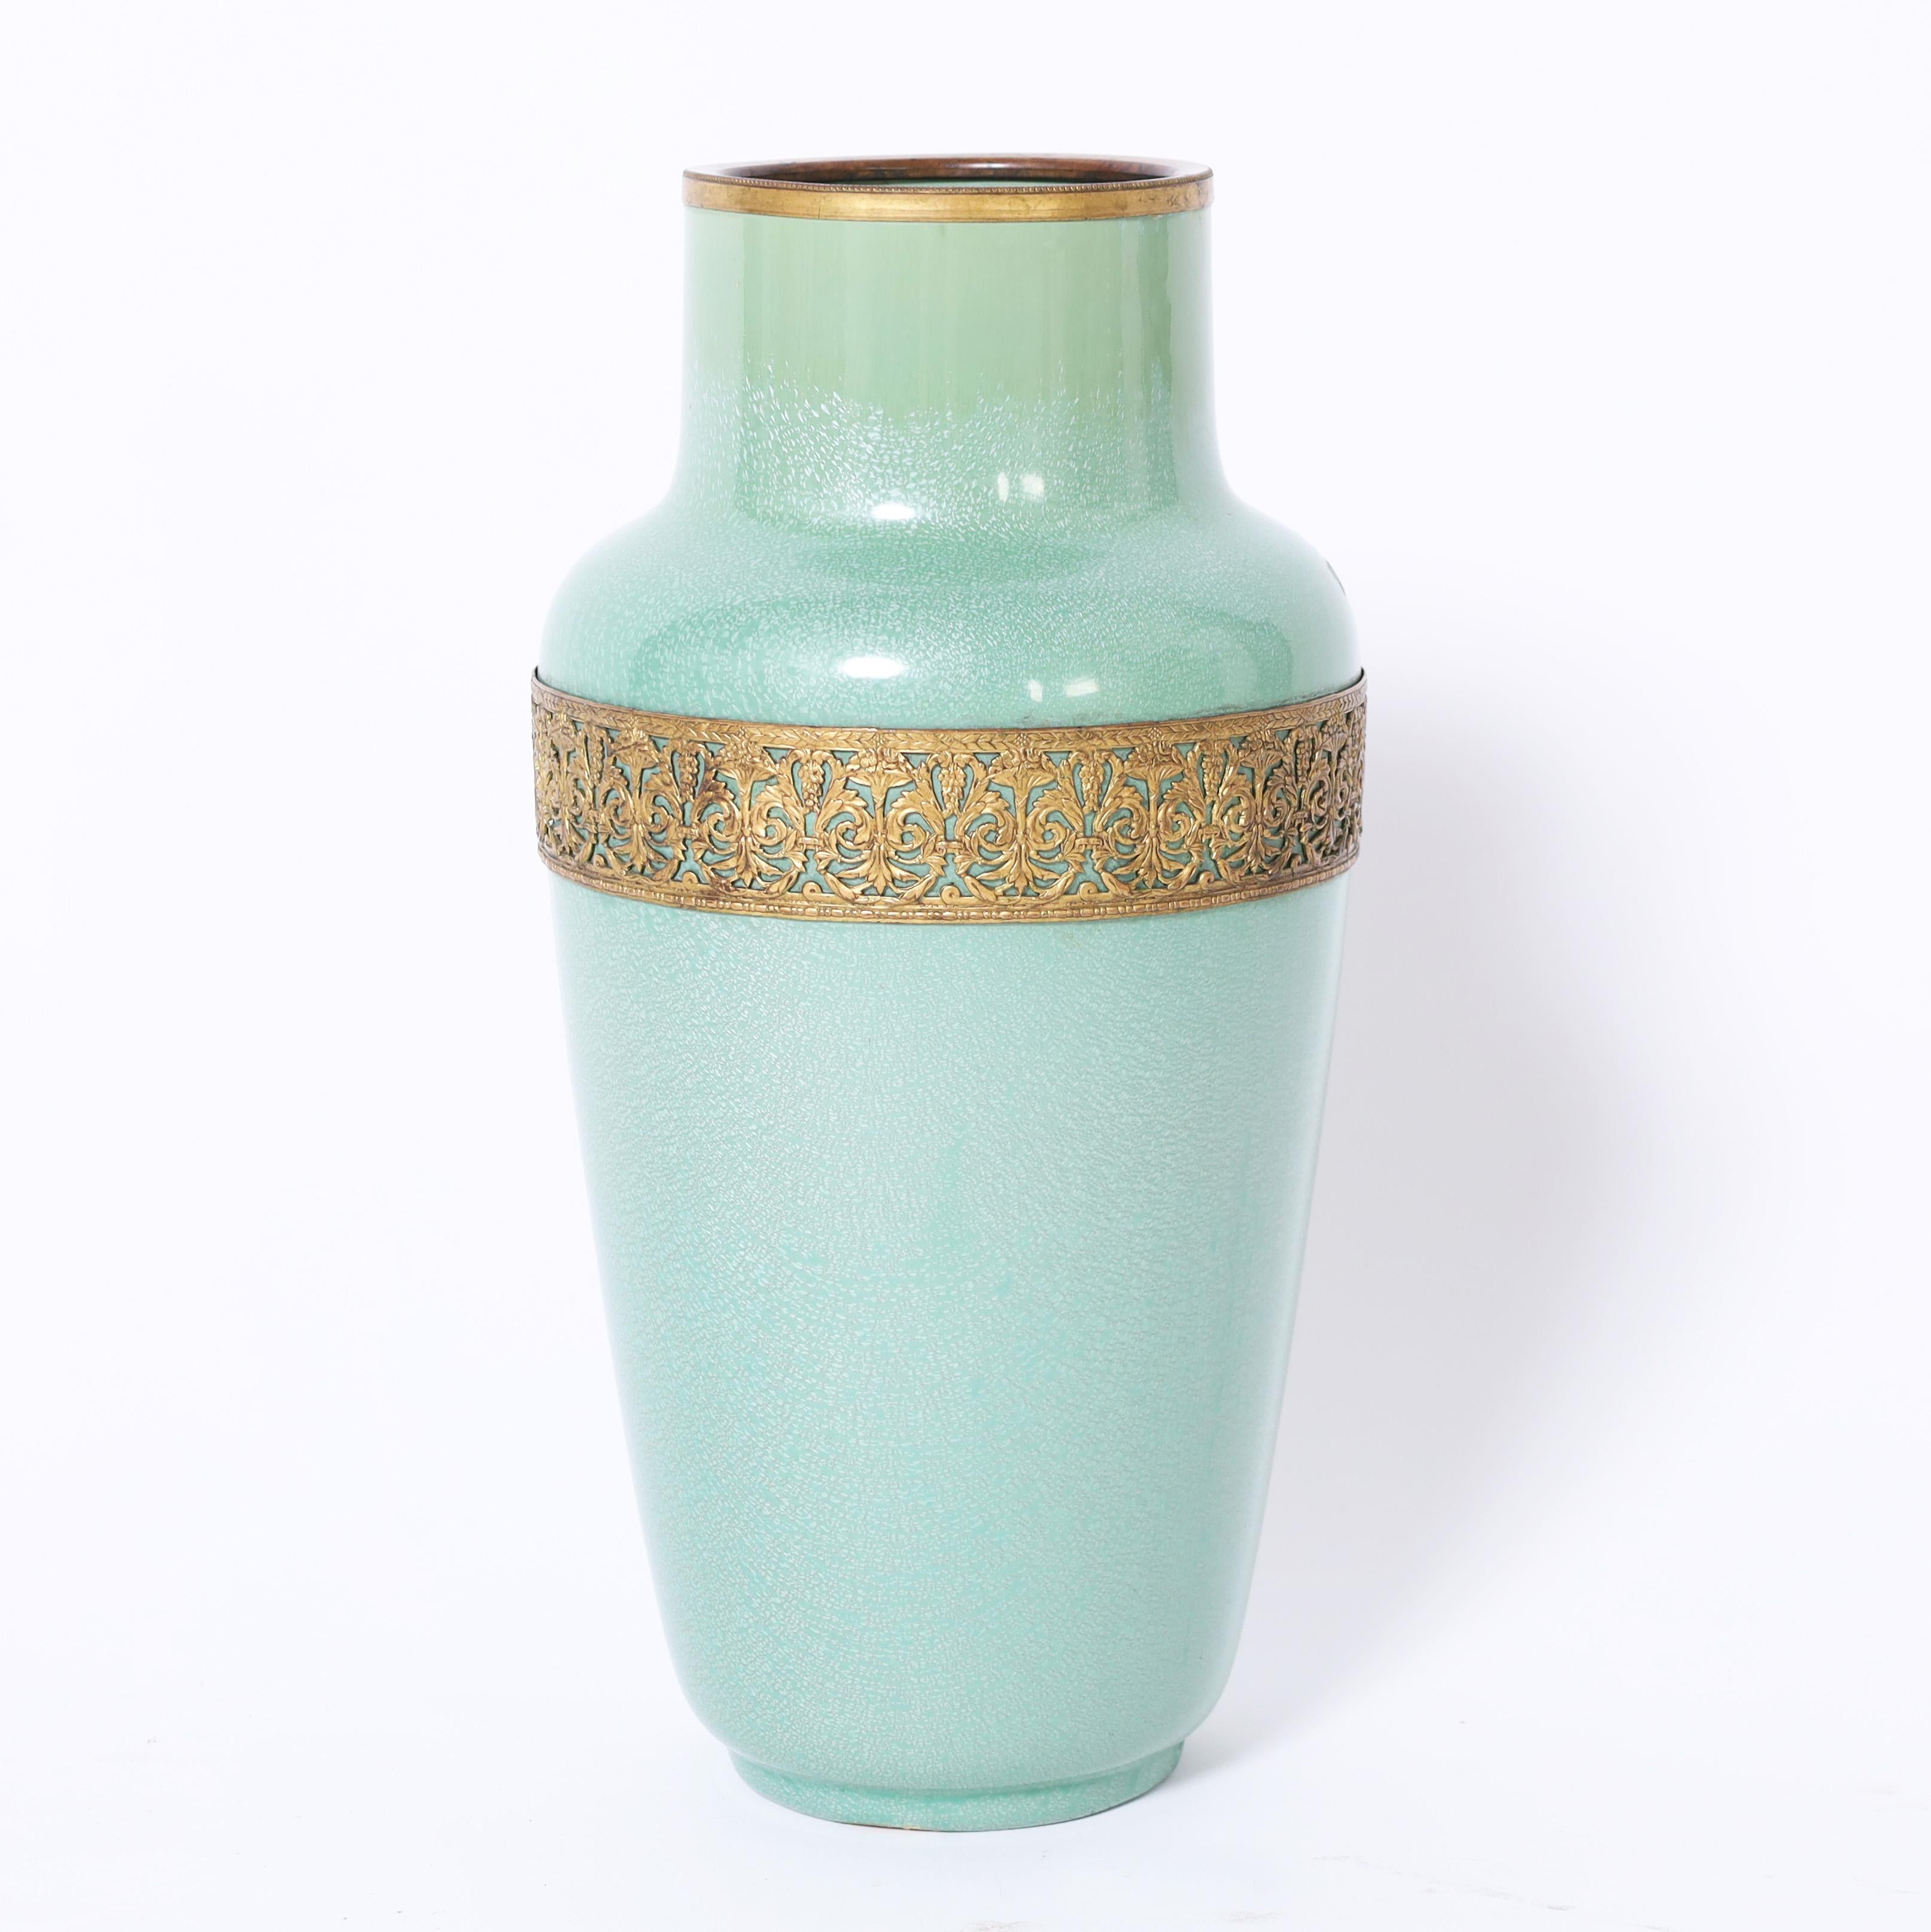 Paire de vases en poterie art déco de forme classique, décorés d'une glaçure verte, d'un bord en laiton et d'une manchette florale stylisée. Signé Sarrequemines France sur les fonds. 